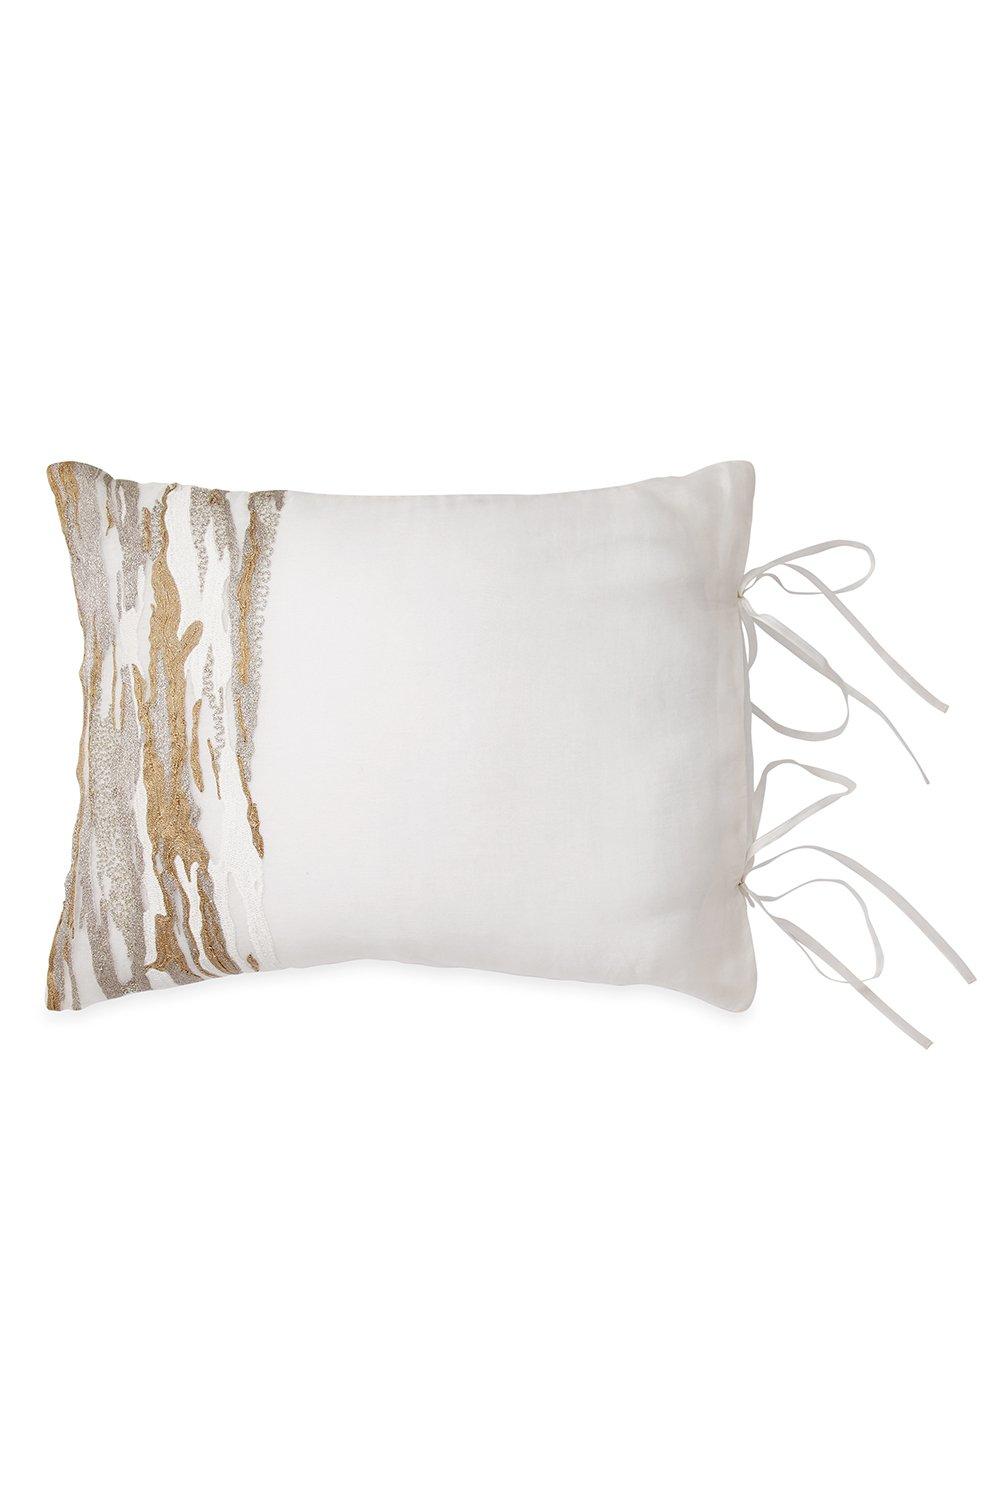 Soft Furnishings | 'Seduction' Cushion 40x50 cm | Donna Karan